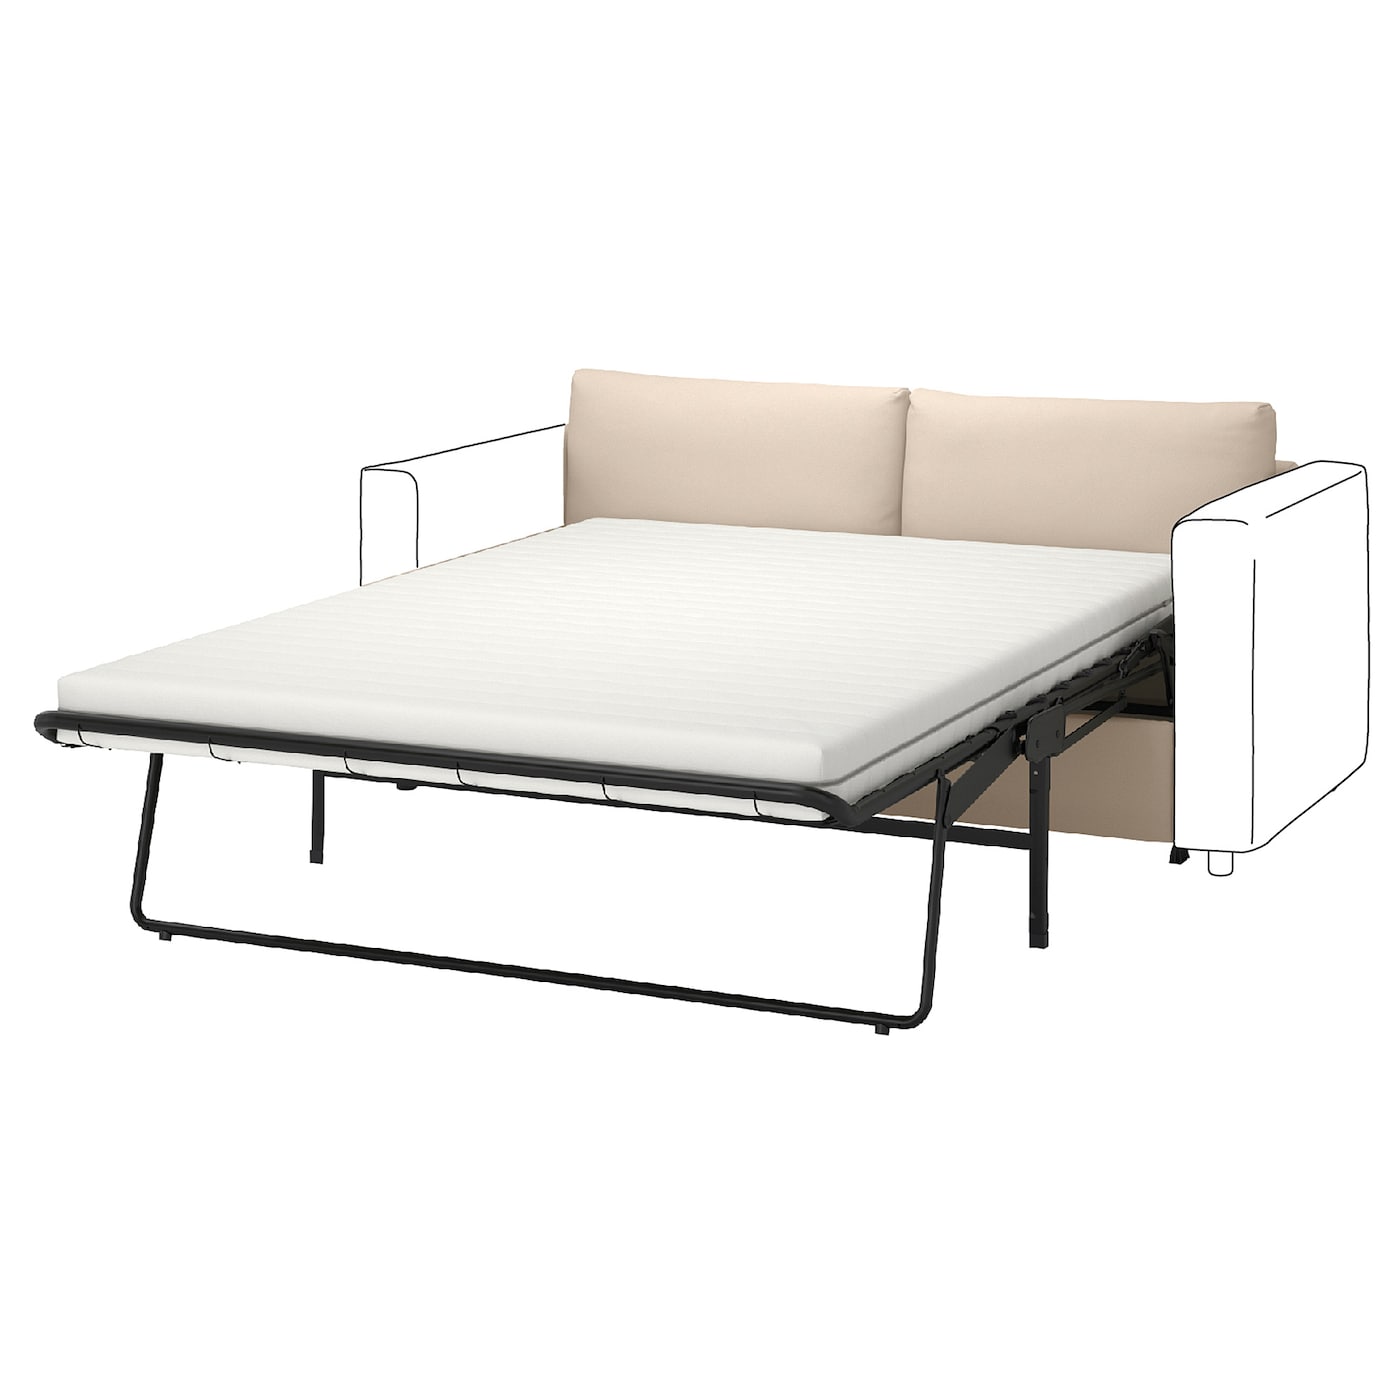 2-местный диван - IKEA VIMLE, 98x160см, бежевый, ВИМЛЕ ИКЕА